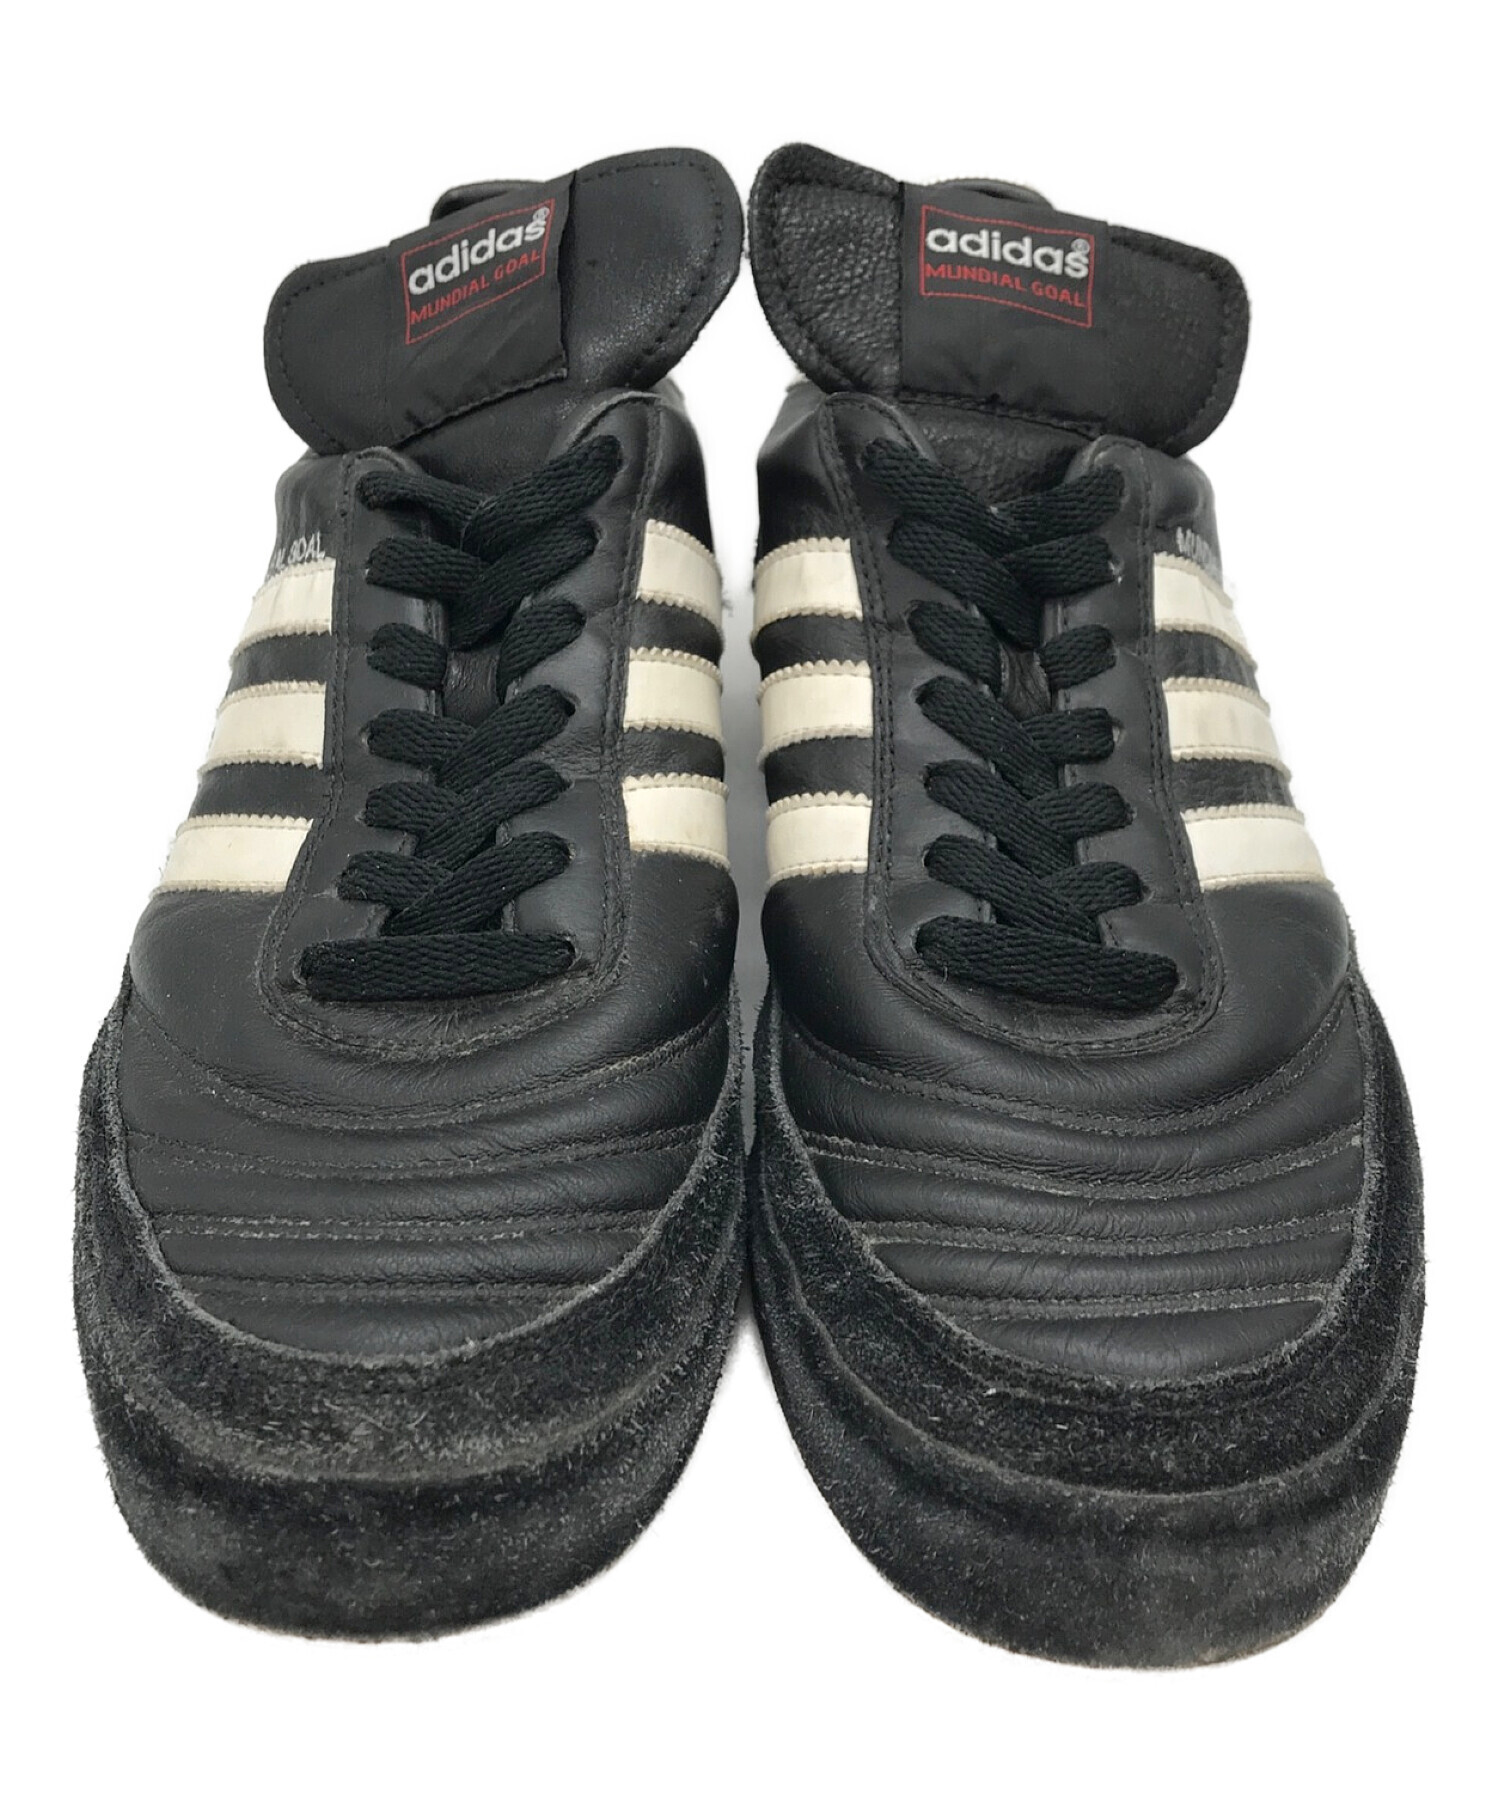 adidas (アディダス) ムンディアルゴール ブラック サイズ:27